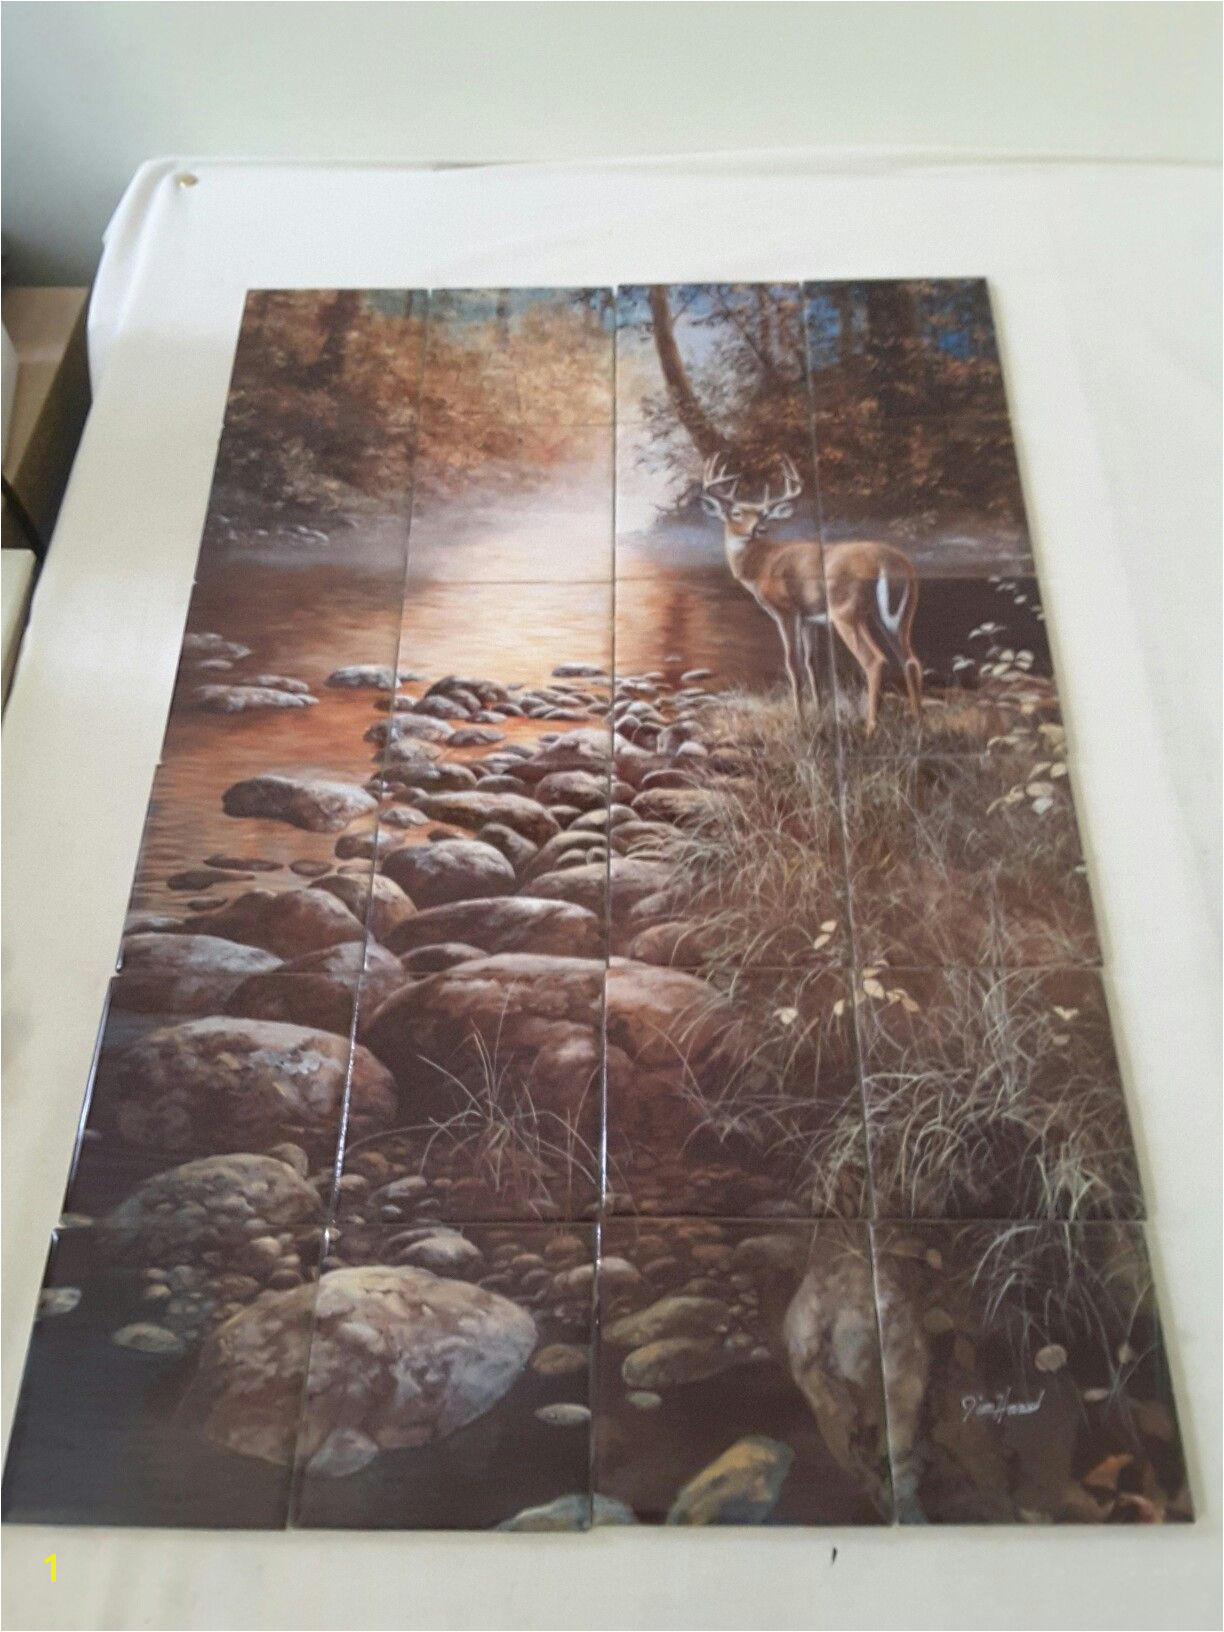 Beside still waters tile mural on 6" tiles at £216 tilemural kitchensplashback animal deer deerhunting countryside